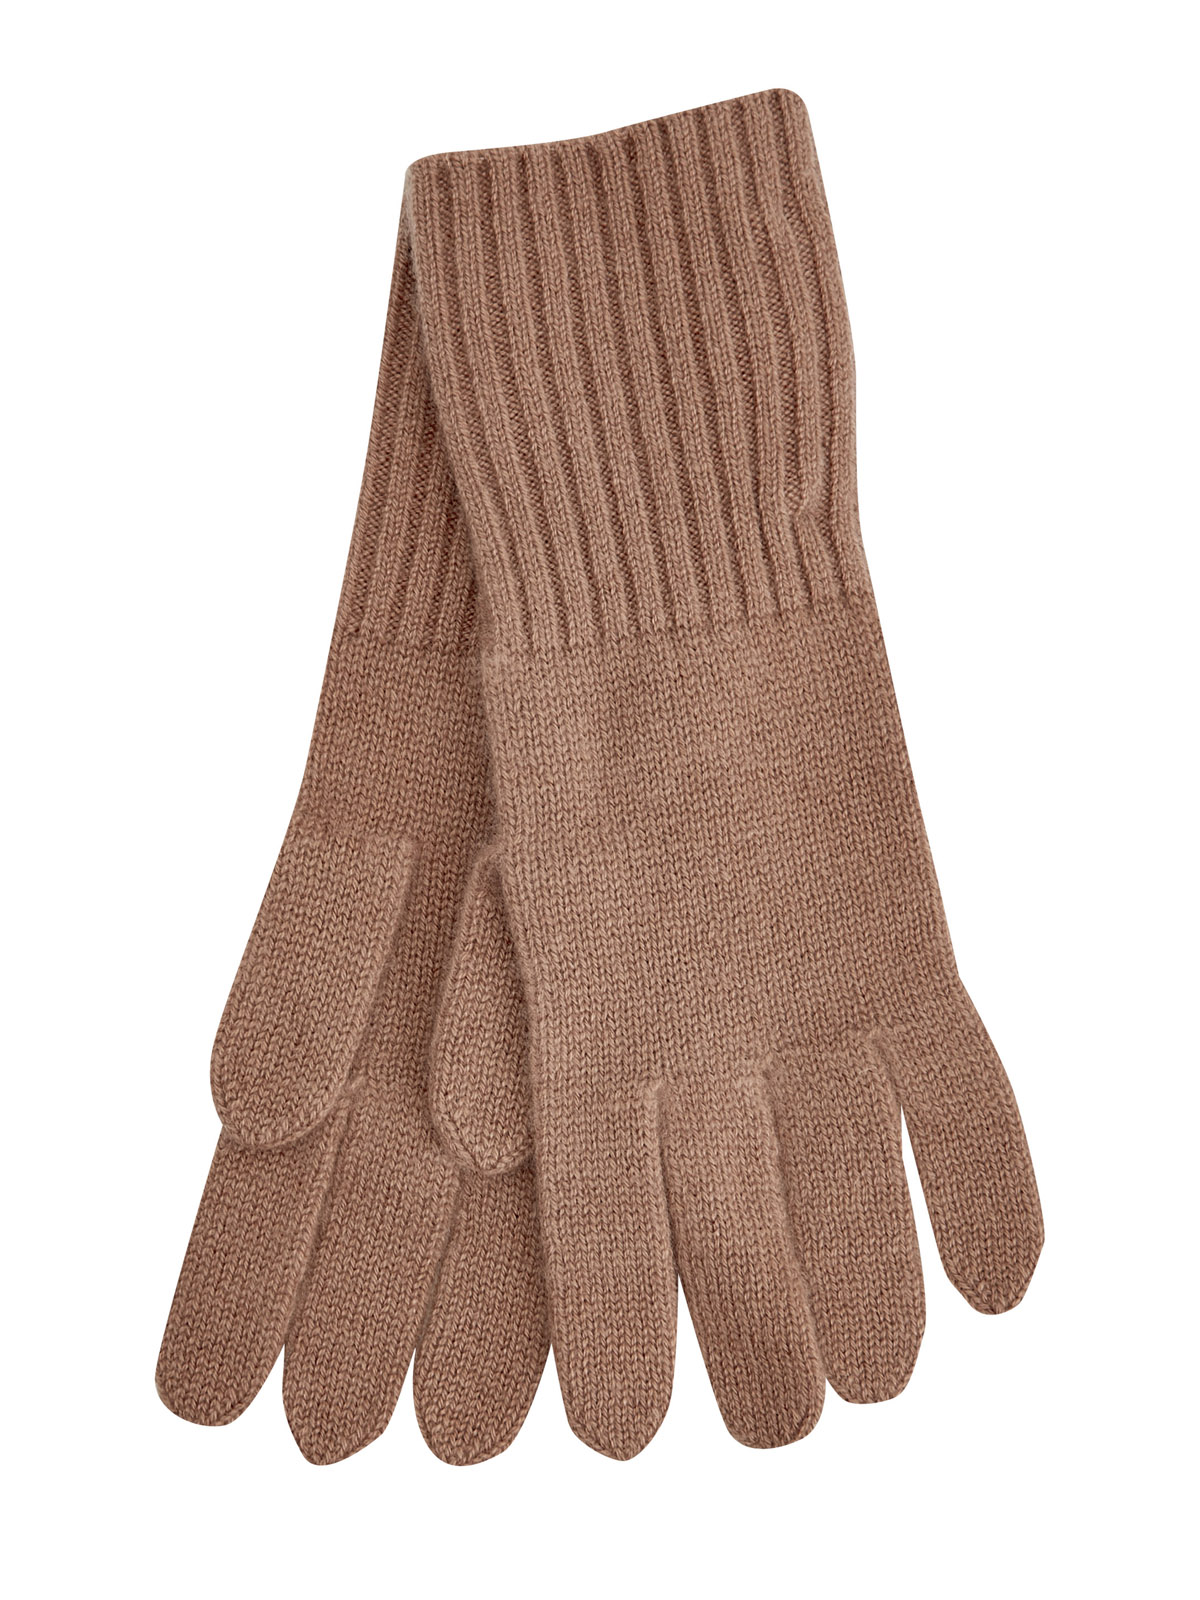 Перчатки из мягкого кашемира с манжетами английской вязки RE VERA, цвет коричневый, размер M;L;XL - фото 1